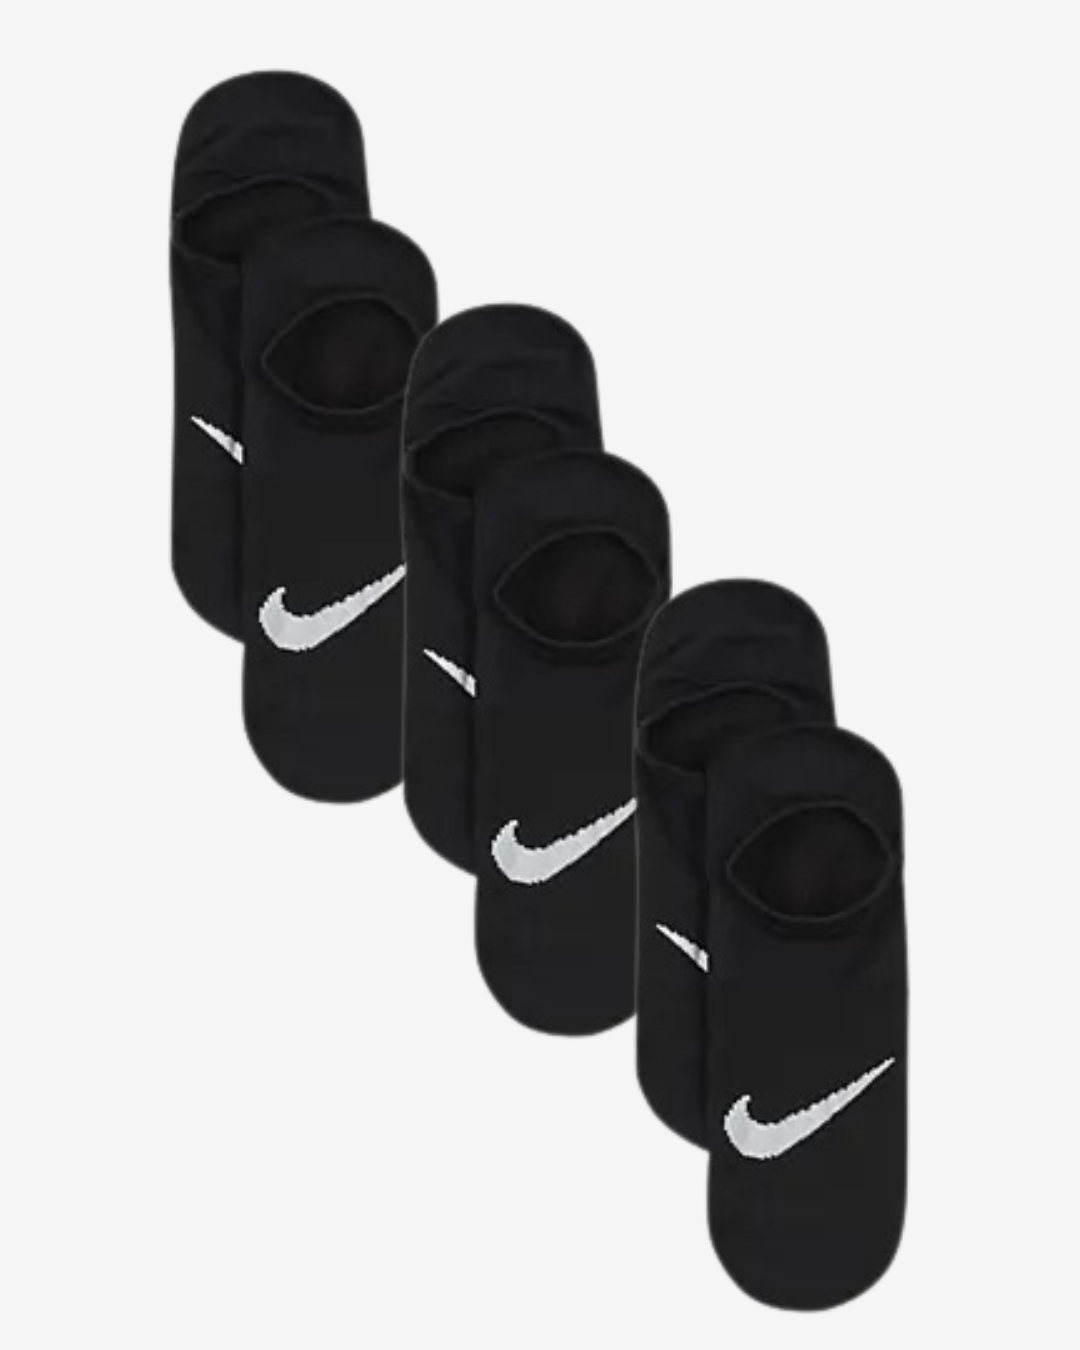 Nike Everyday dame ankelstrømper - Sort - Str. 38-42 - Modish.dk